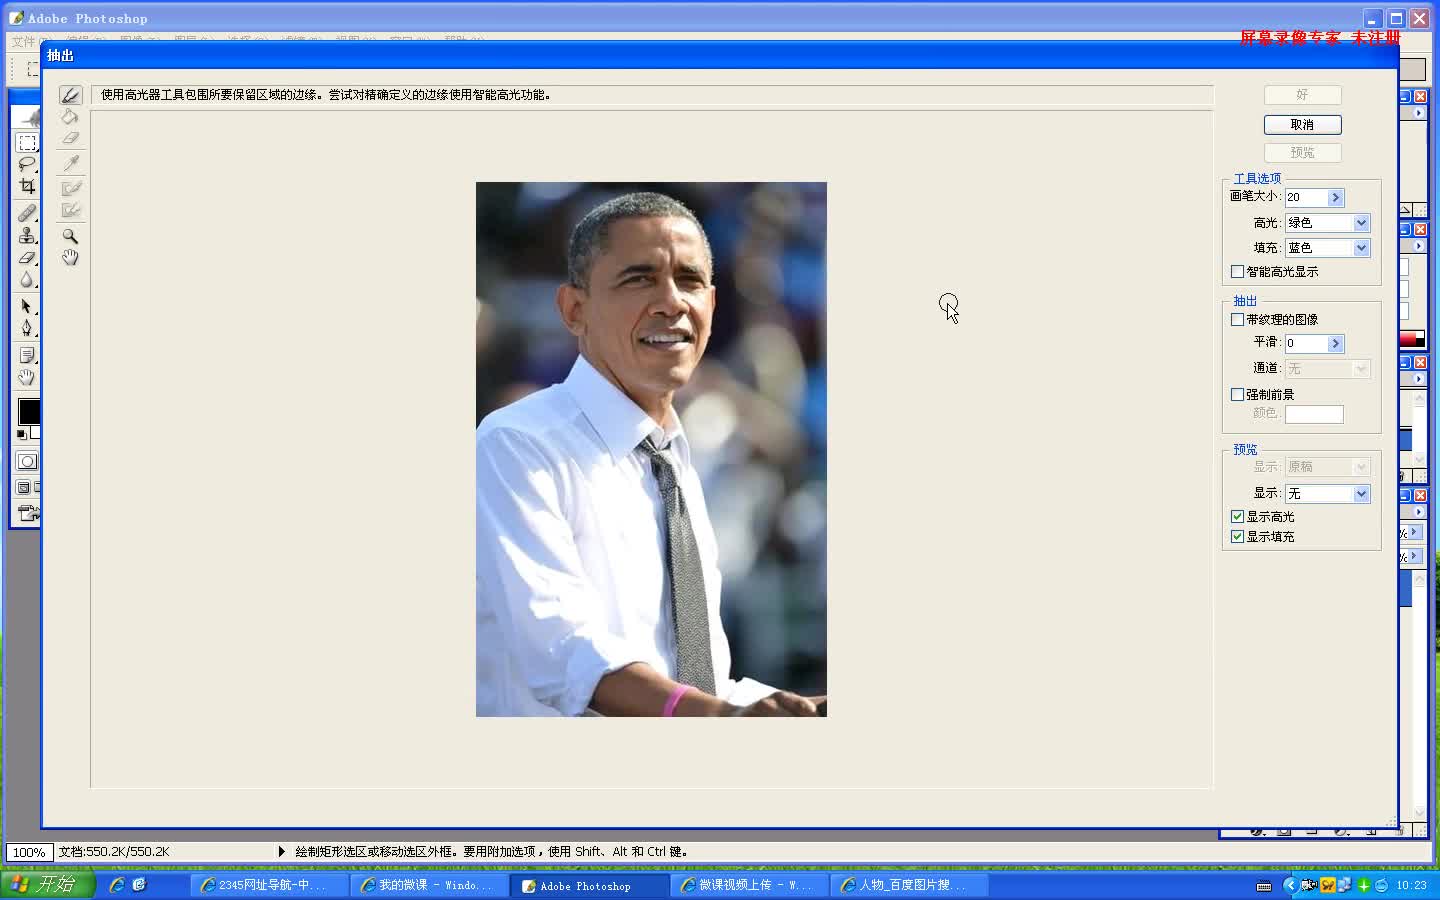 信息技术奥赛 Adobe photoshop 为奥巴马抠图【信息技术奥赛】_clip